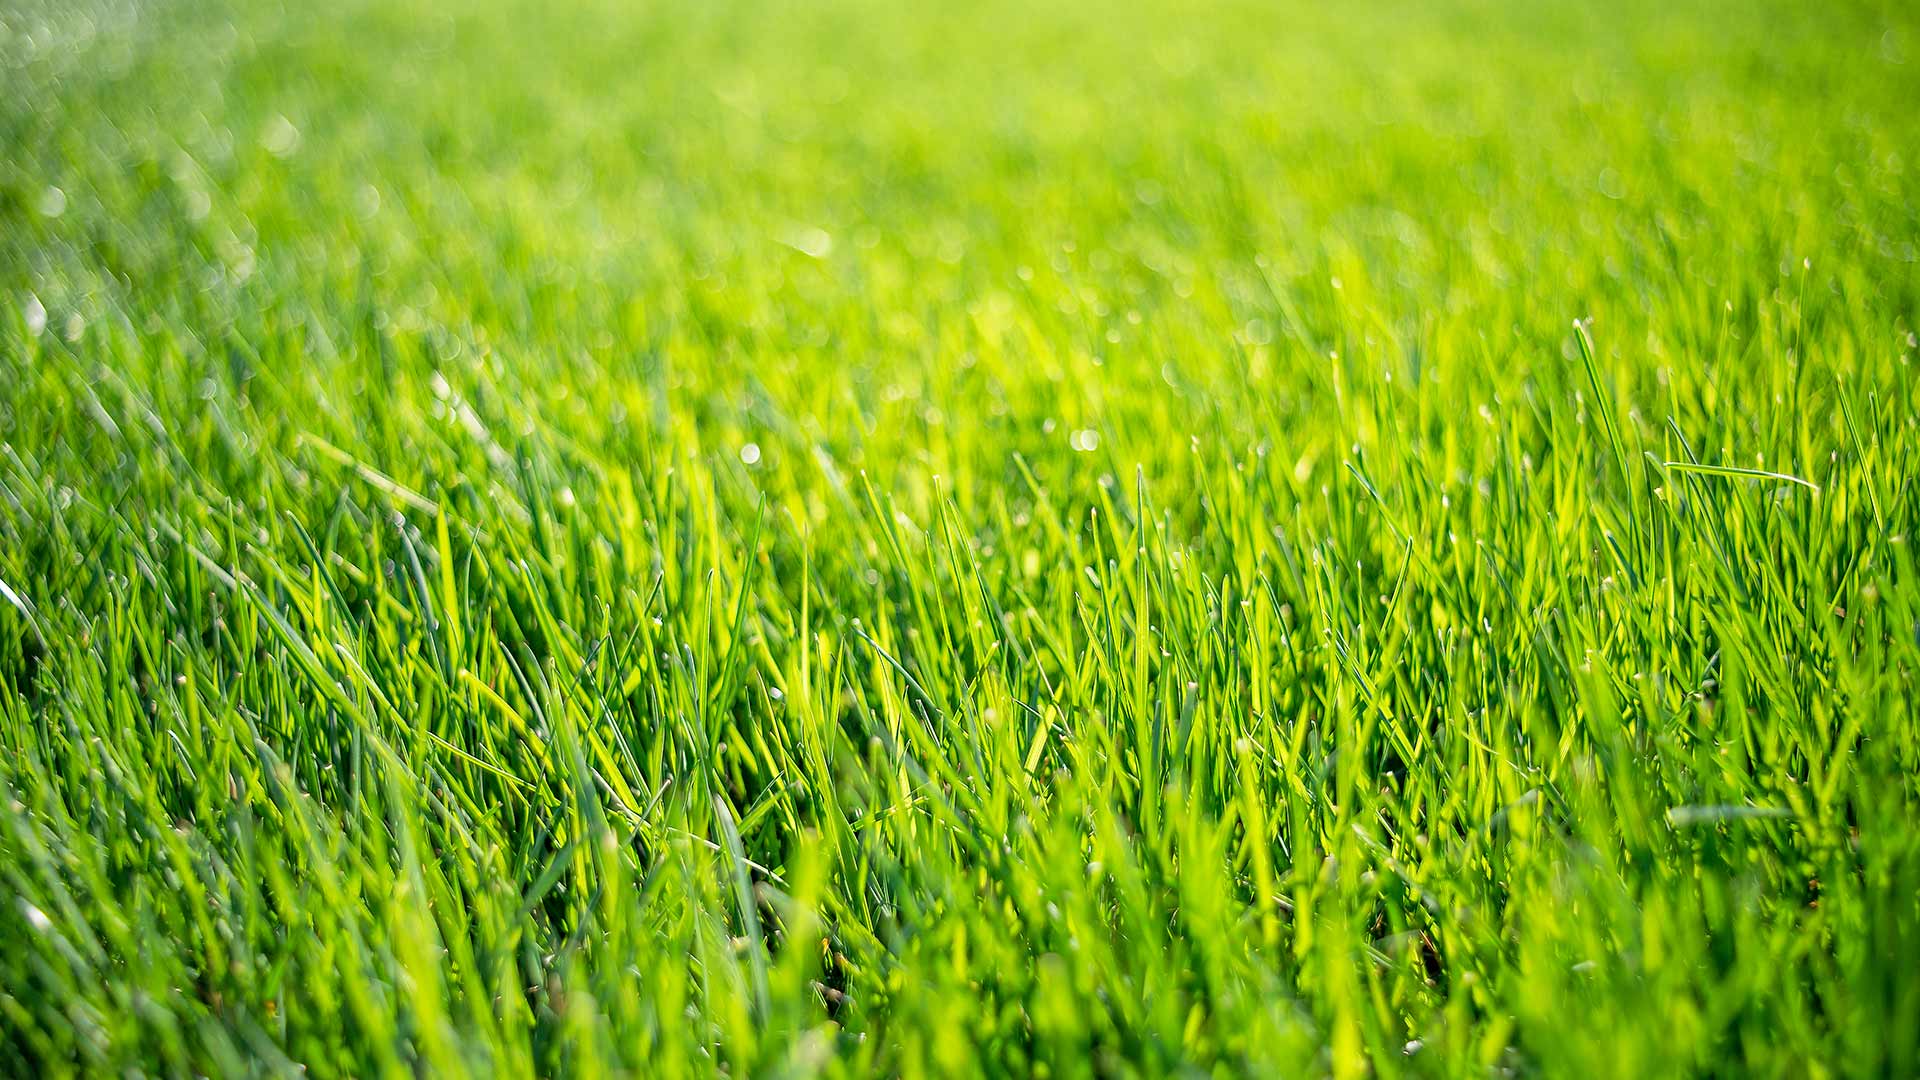 Beautiful, green lawn grass in the sunlight near Carmel, Indiana.